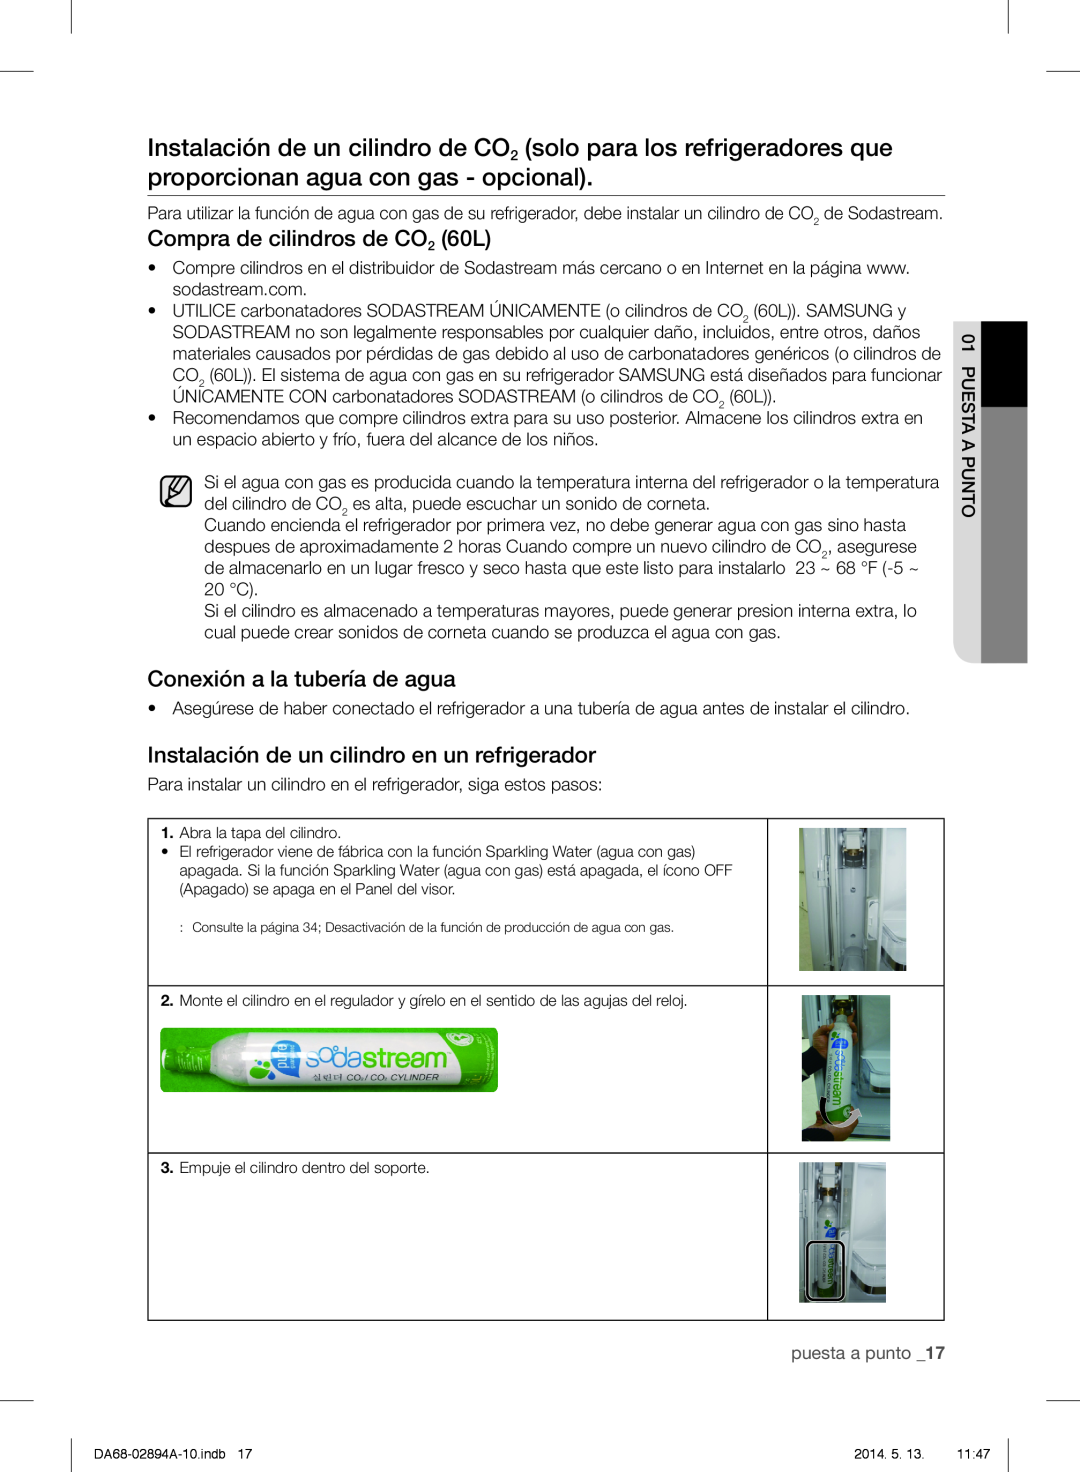 Samsung RF31FMESBSR user manual Compra de cilindros de CO2 60L, Conexión a la tubería de agua, puesta a punto _17 